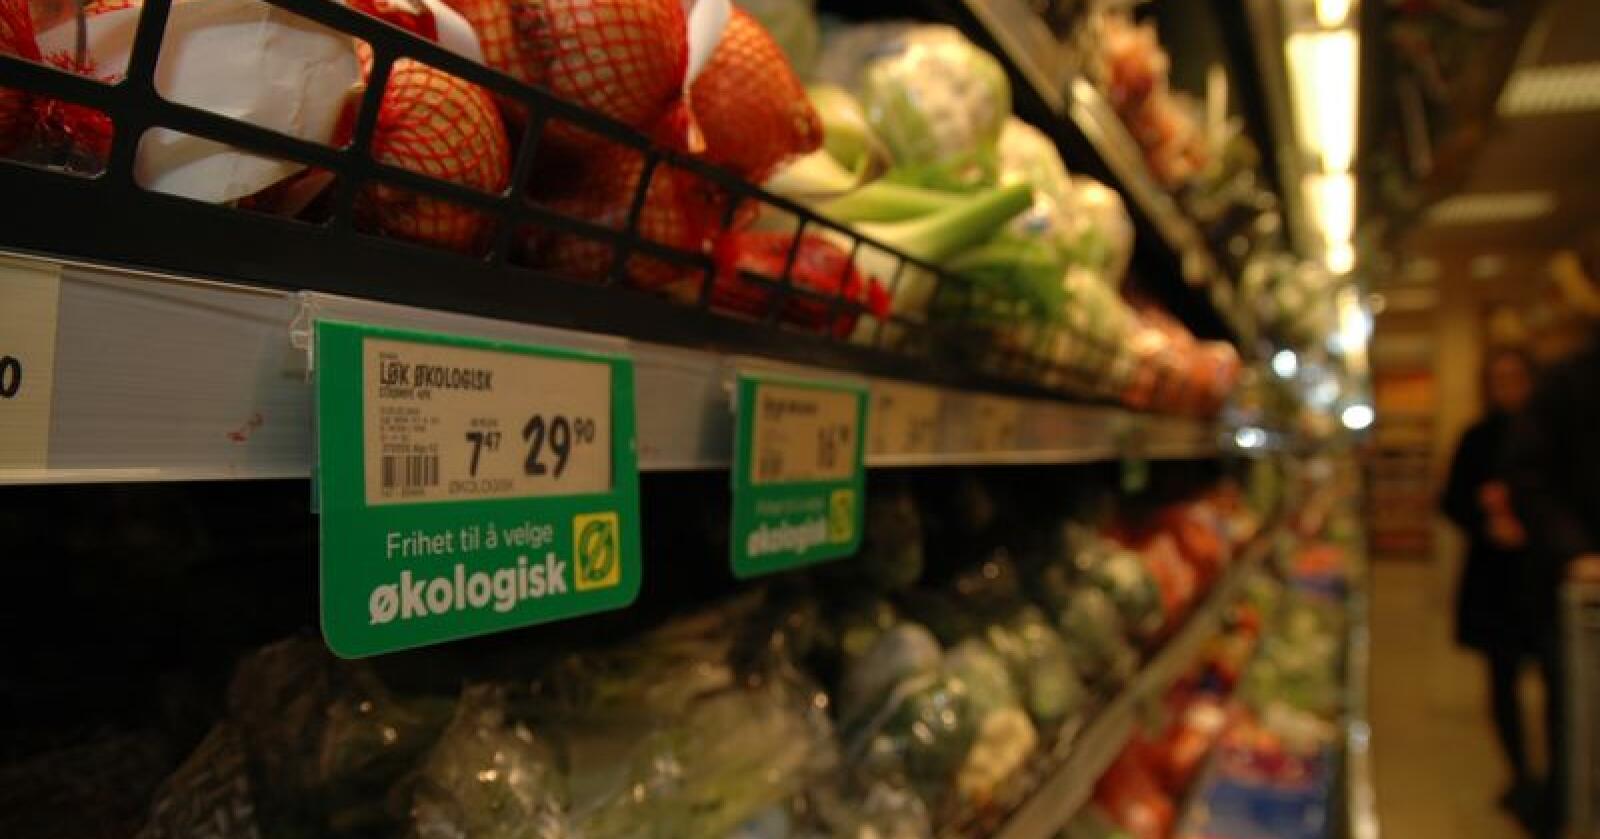 Danmark har ambisiøse planer for videre økovekst. I Norge er de politiske ambisjonene senket. Bildet viser økologisk frukt og grønt i norsk butikk. (Arkivfoto)